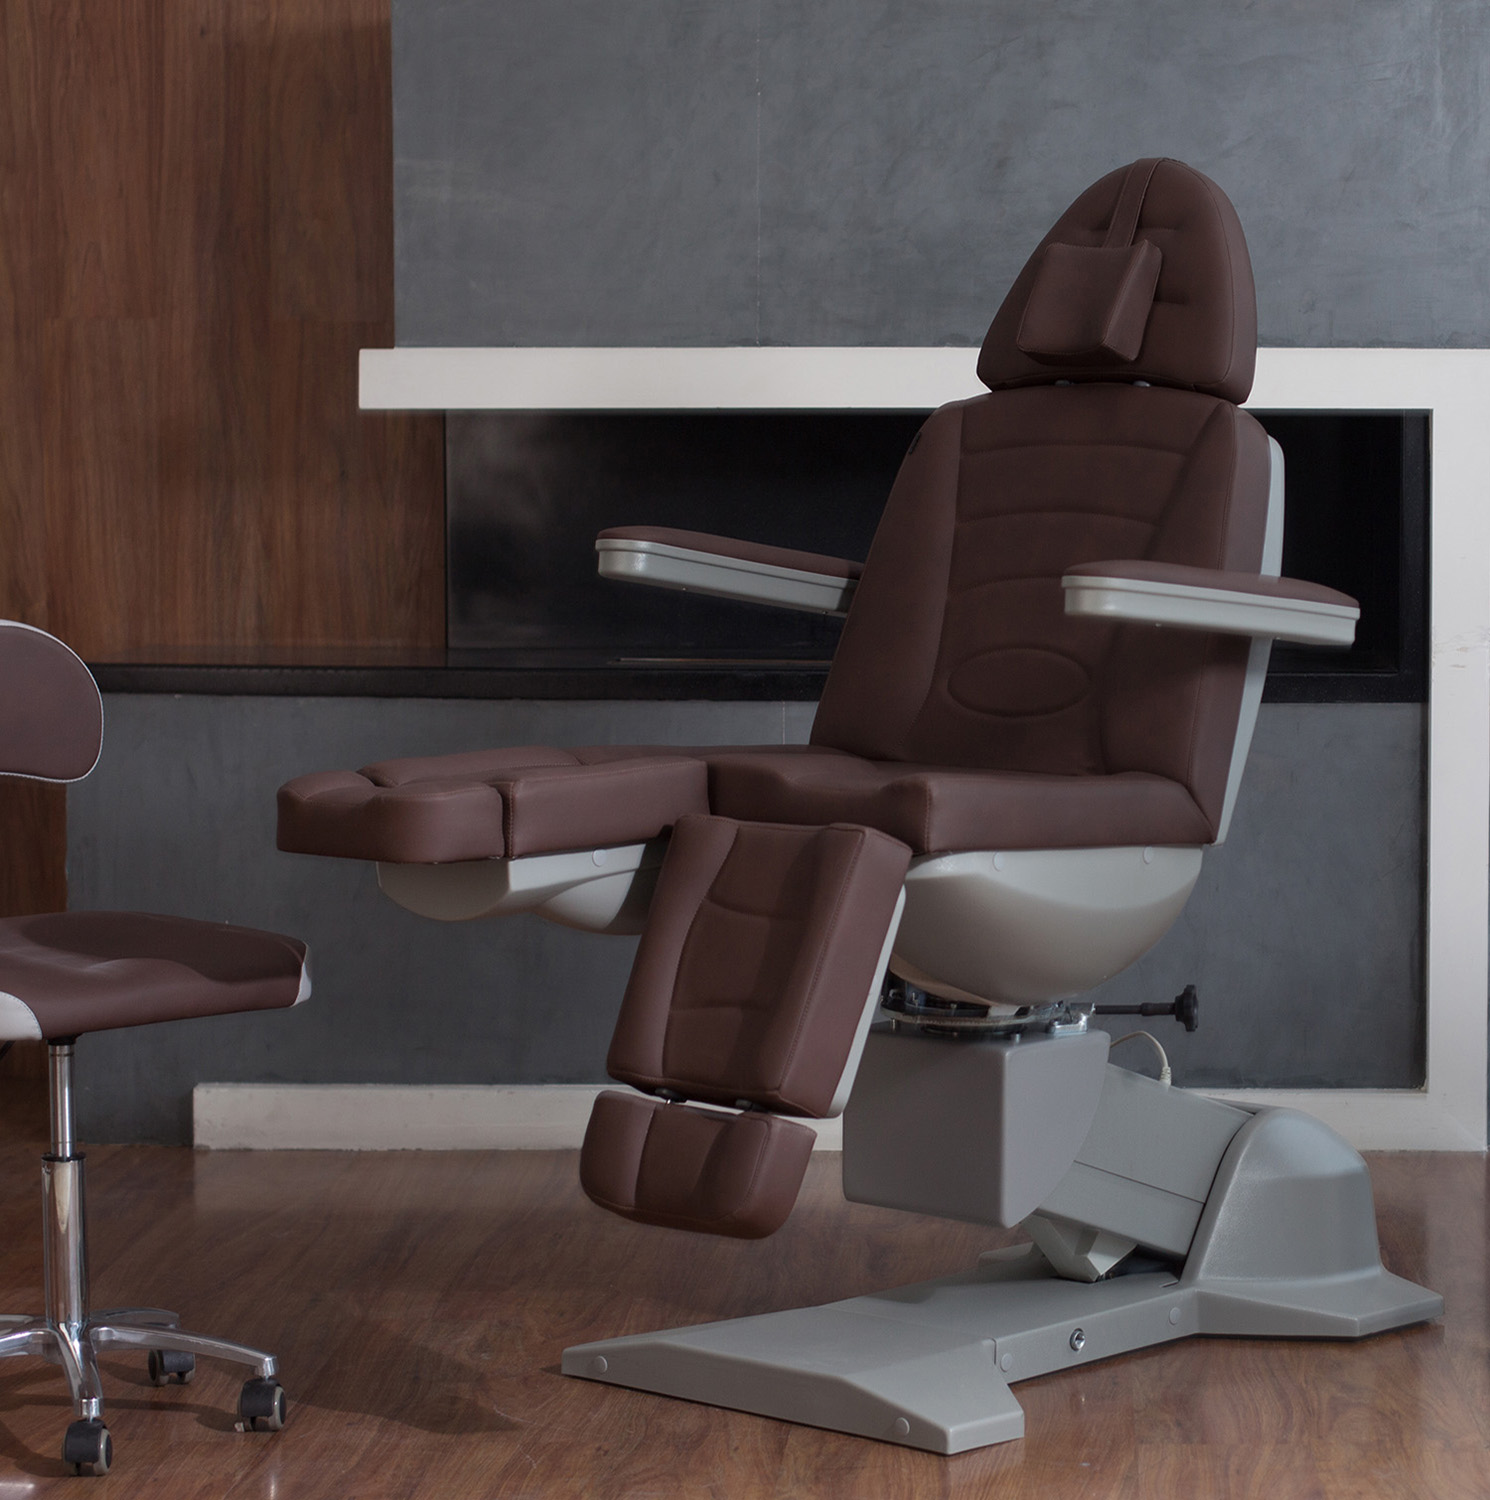 Sigma 5.0. Педикюрное кресло Сигма 3,0. Педикюрное кресло Сигма 5.0. Педикюр но кресло Сигма 5. Педикюрное кресло Сигма 3.0 Краснодар.